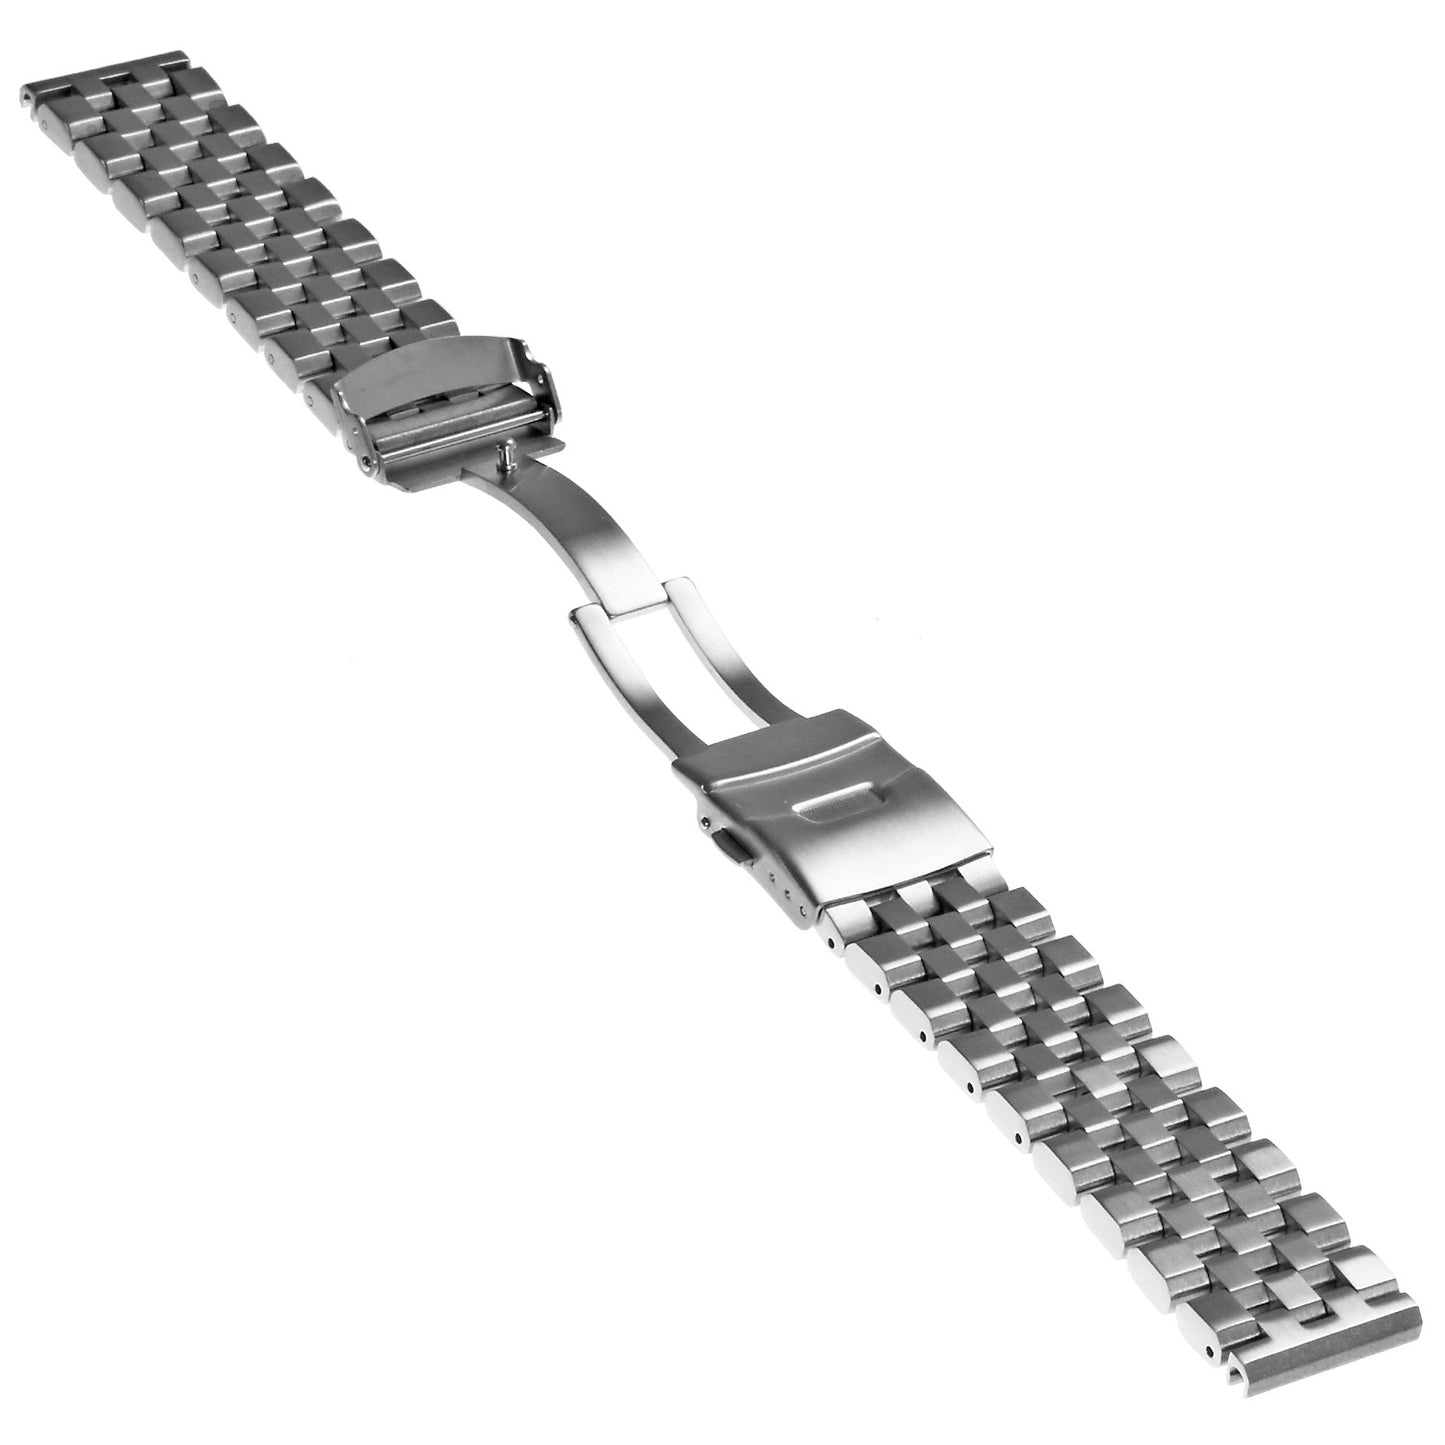 Super Engineer II Bracelet for Garmin Forerunner 745